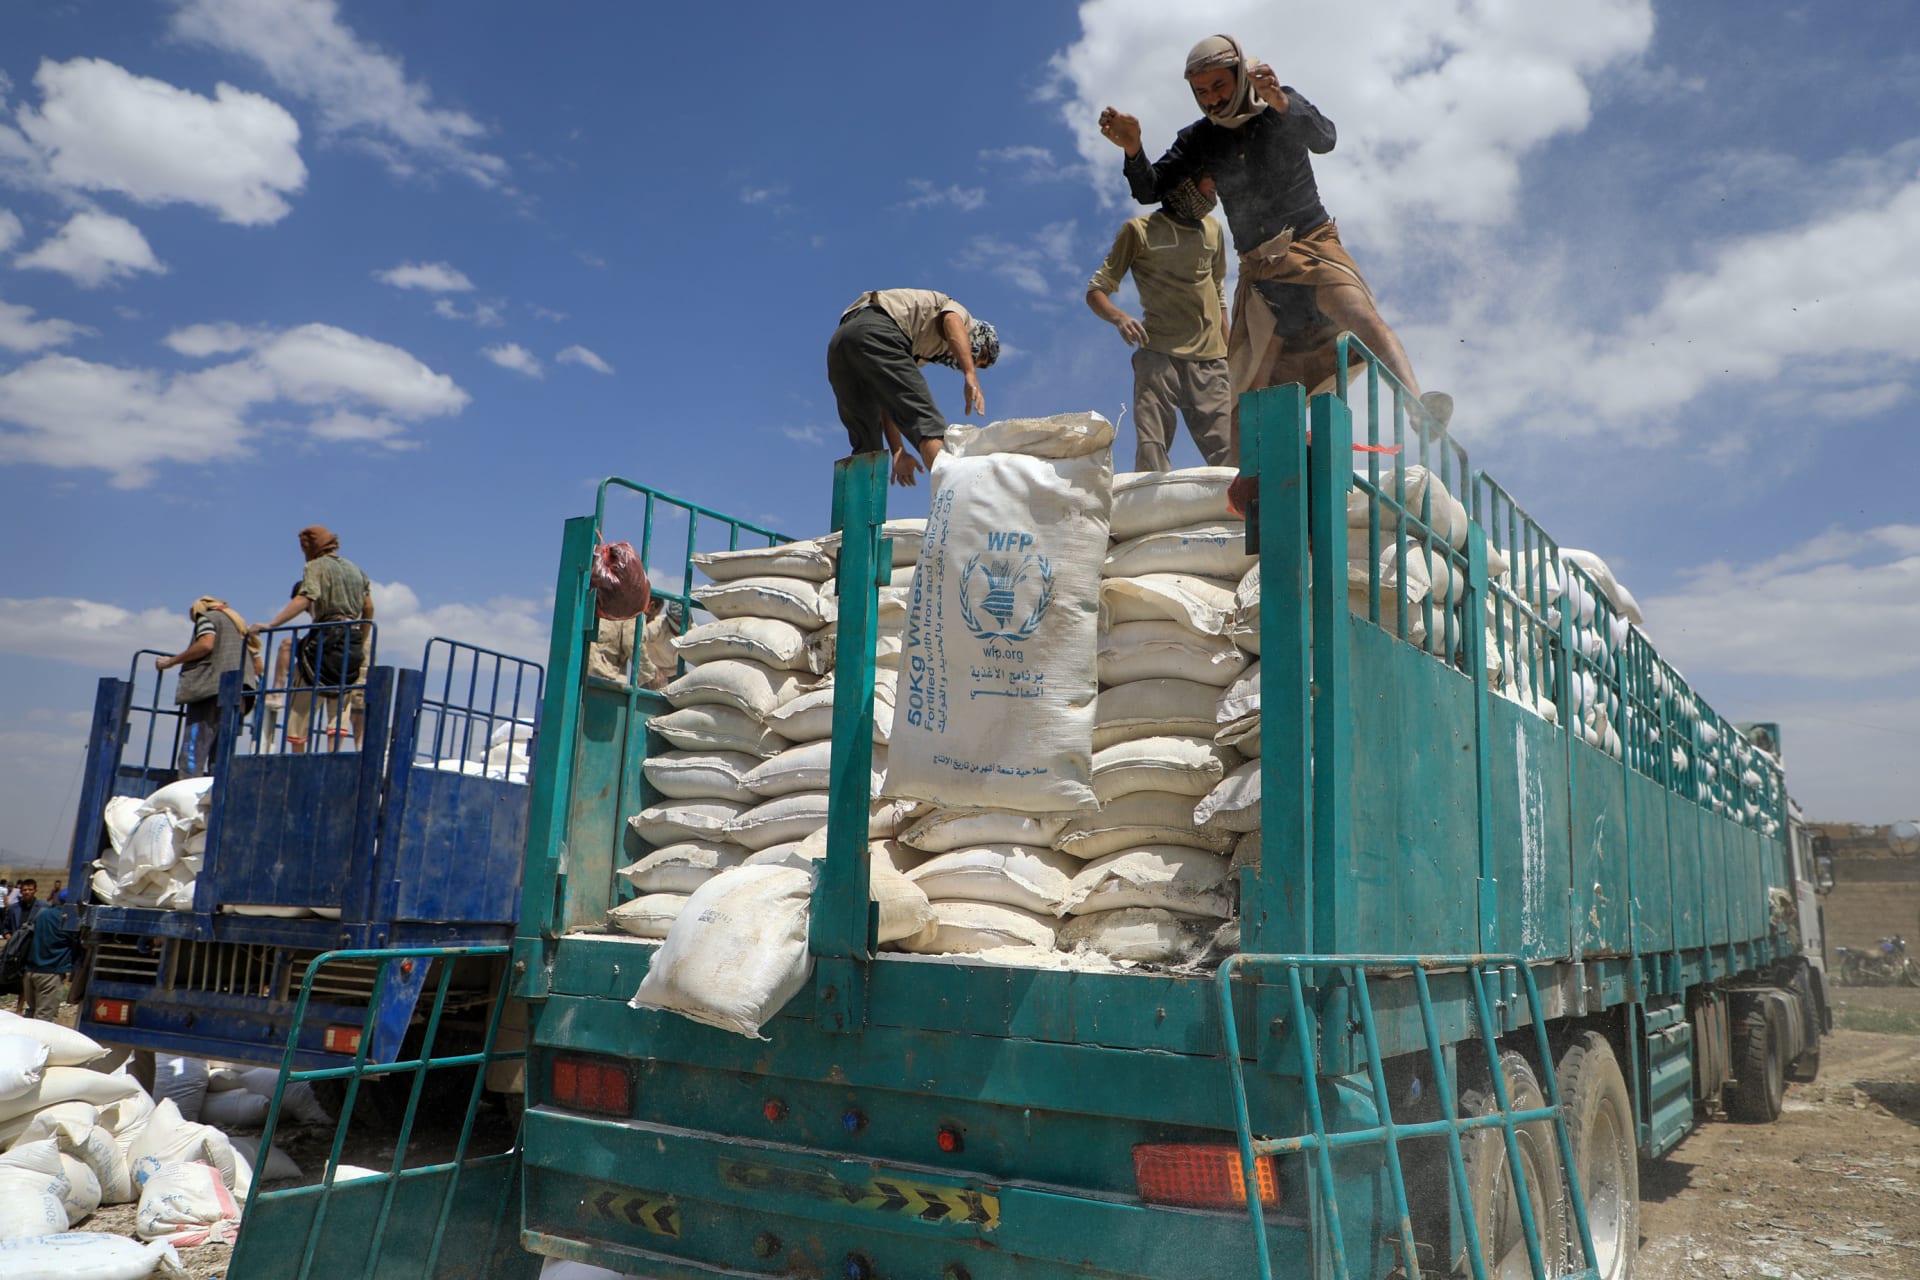 المتمردون الحوثيون في اليمن يتخلصون من طرود المساعدات المنتهية الصلاحية من برنامج الغذاء العالمي في العاصمة صنعاء عام 2019